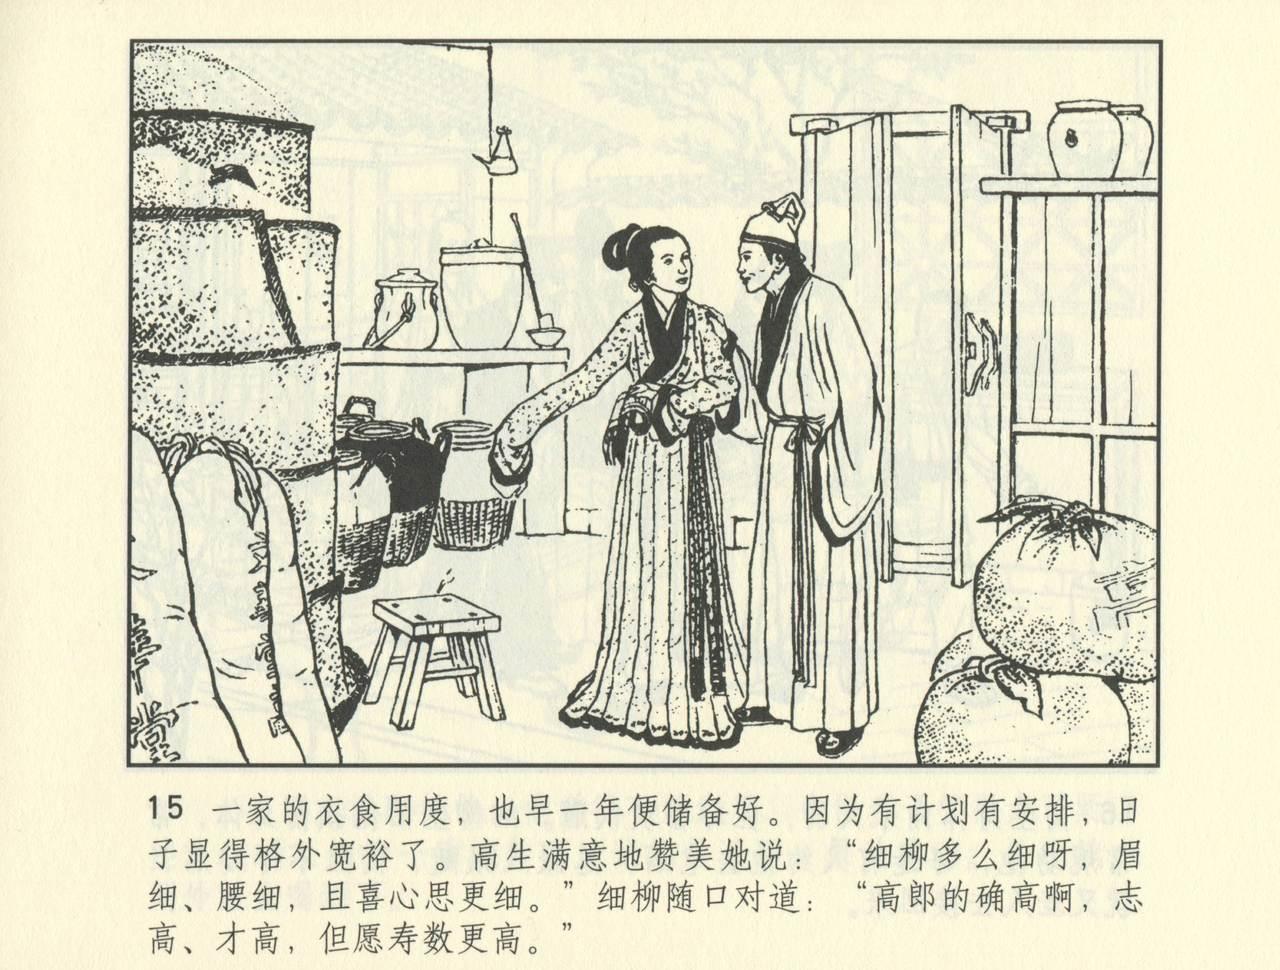 聊斋志异 张玮等绘 天津人民美术出版社 卷二十一 ~ 三十 487